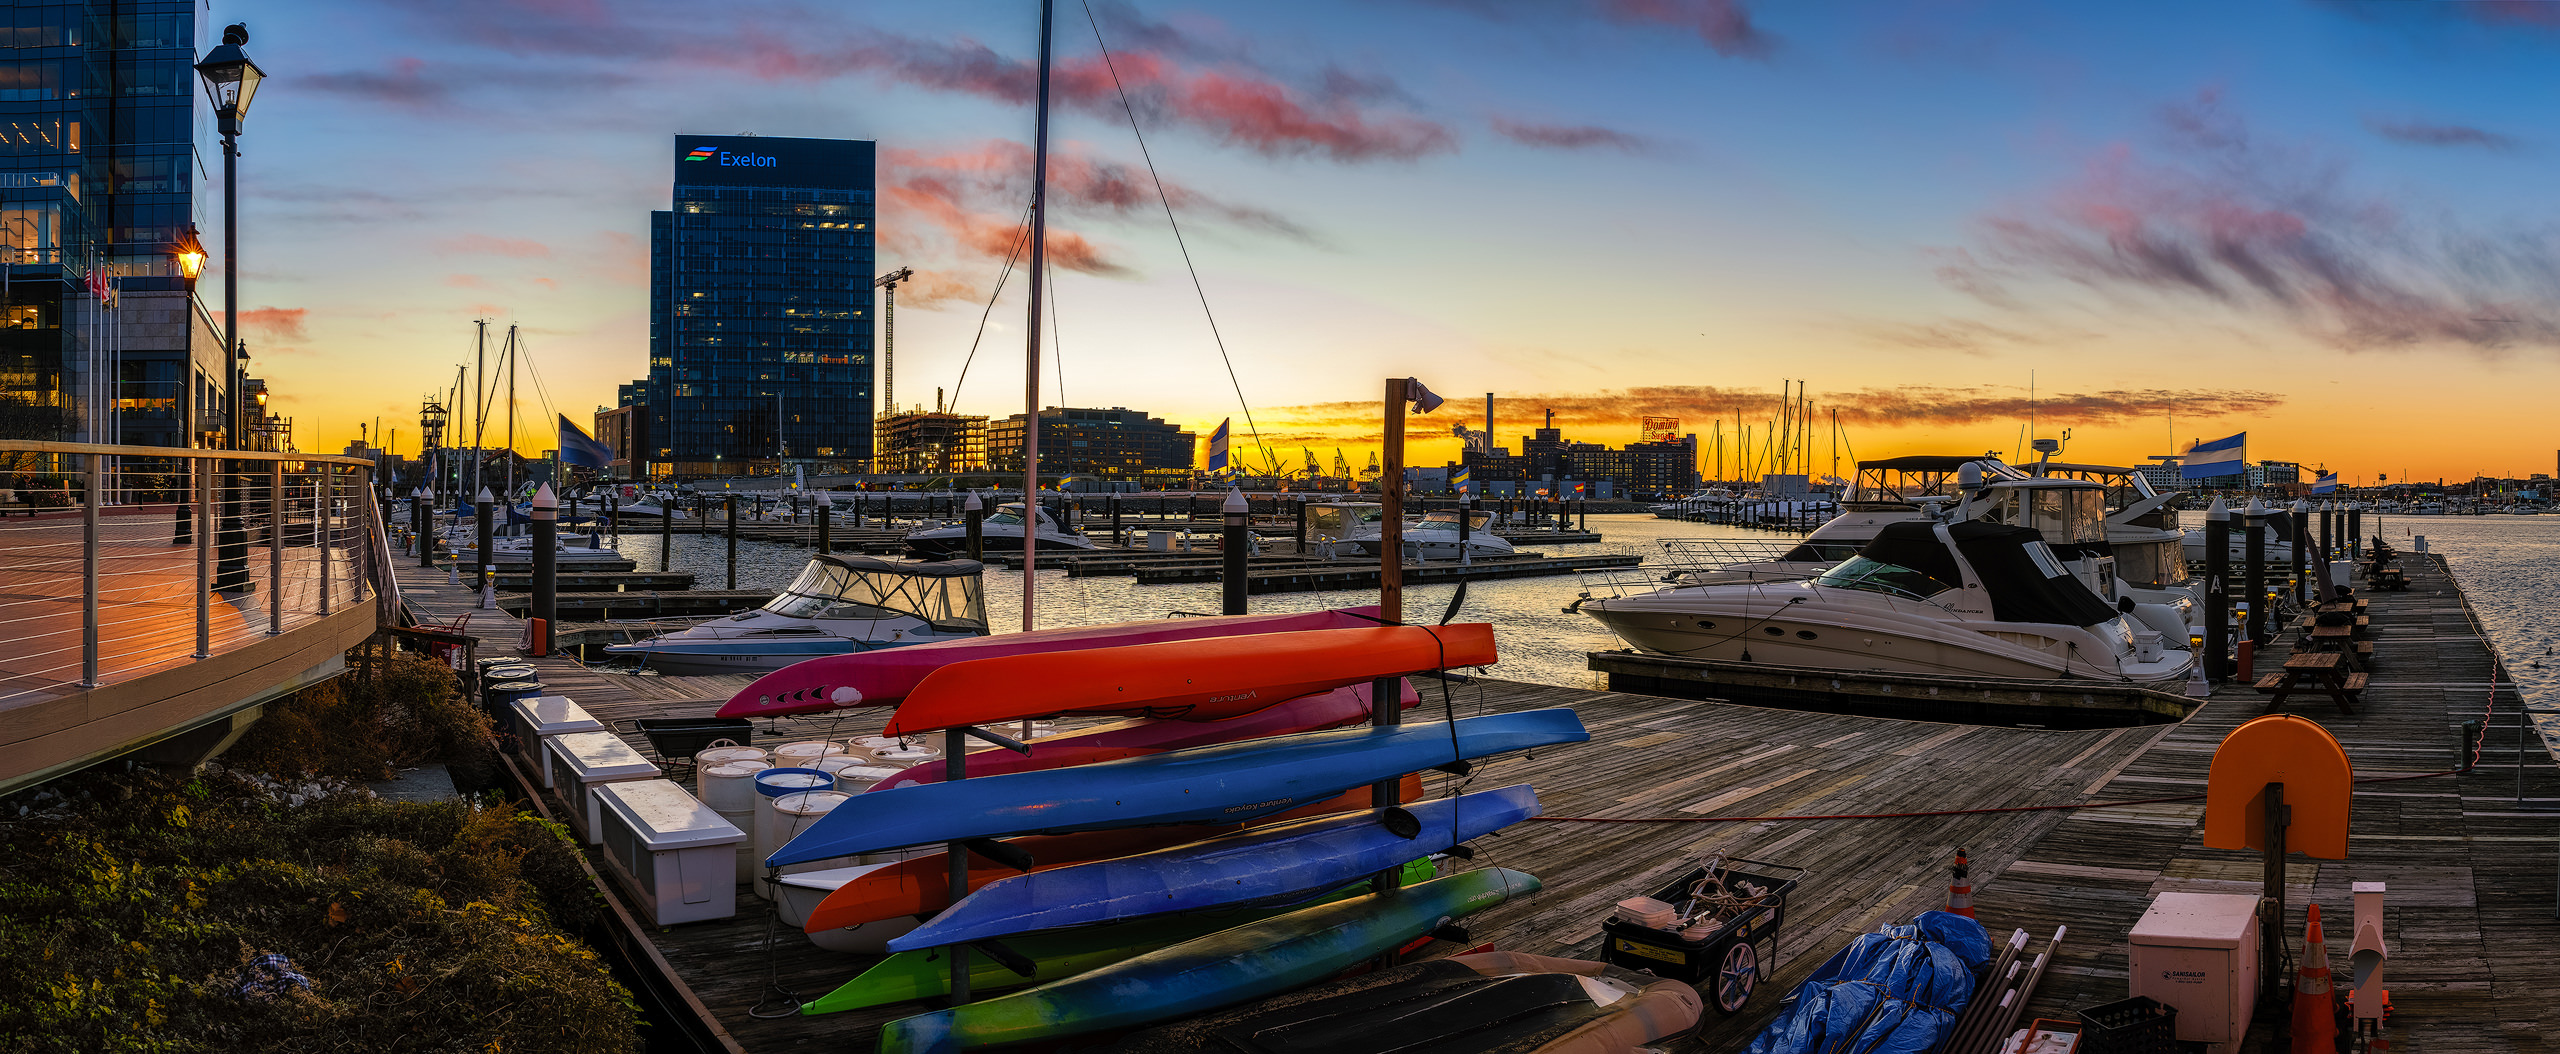 Sunrise at Baltimore's Inner Harbor